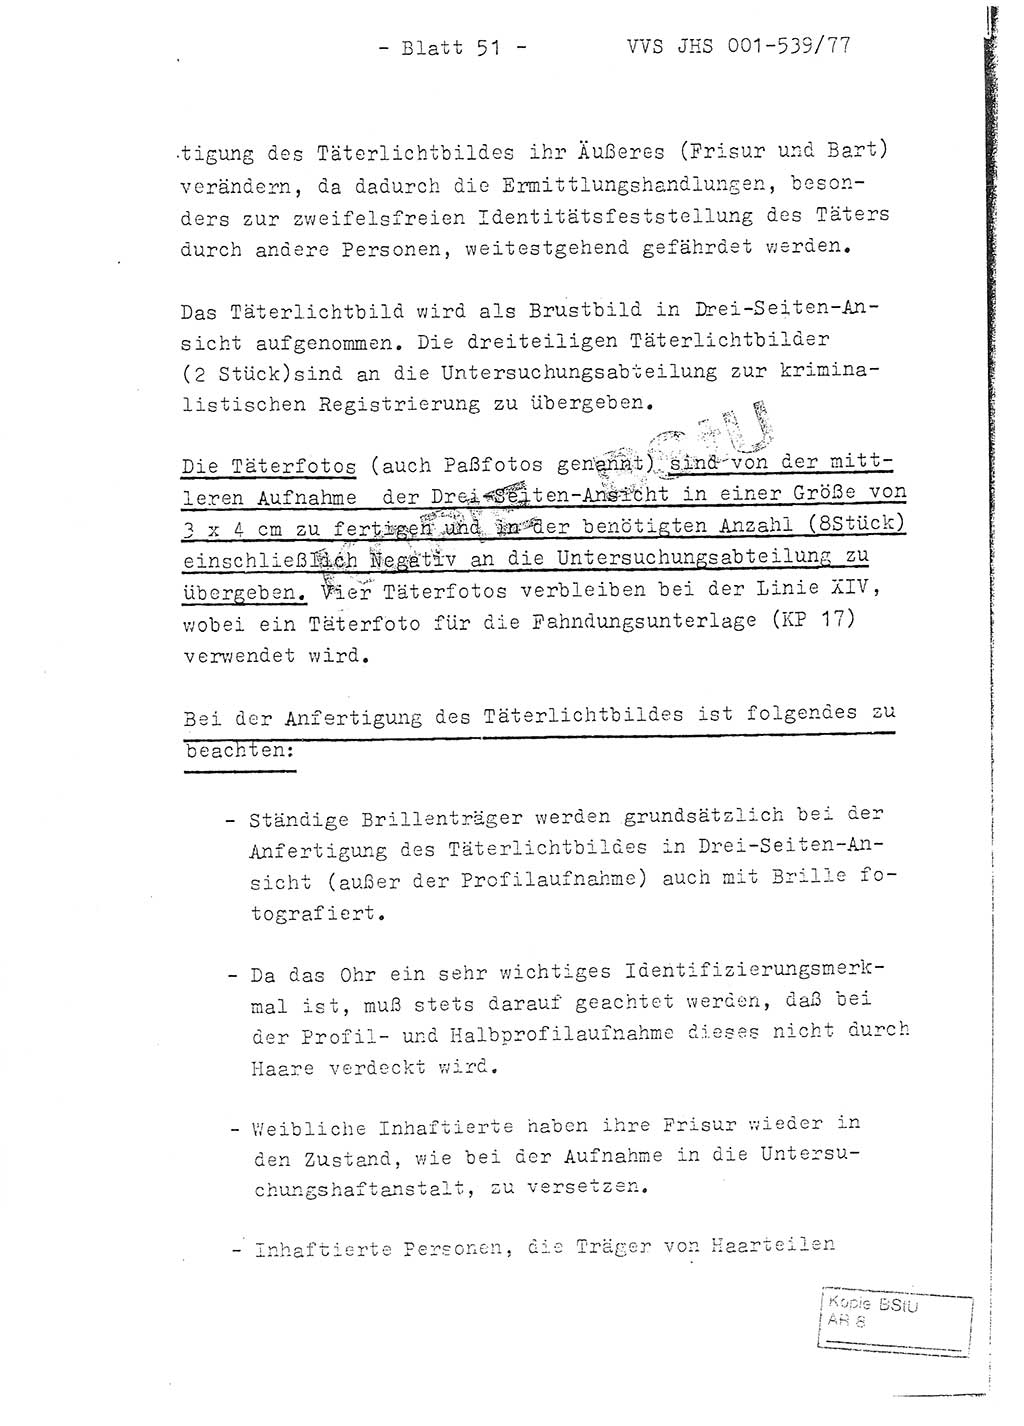 Fachschulabschlußarbeit Hauptmann Dietrich Jung (Abt. ⅩⅣ), Leutnant Klaus Klötzner (Abt. ⅩⅣ), Ministerium für Staatssicherheit (MfS) [Deutsche Demokratische Republik (DDR)], Juristische Hochschule (JHS), Vertrauliche Verschlußsache (VVS) 001-539/77, Potsdam 1978, Seite 51 (FS-Abschl.-Arb. MfS DDR JHS VVS 001-539/77 1978, S. 51)